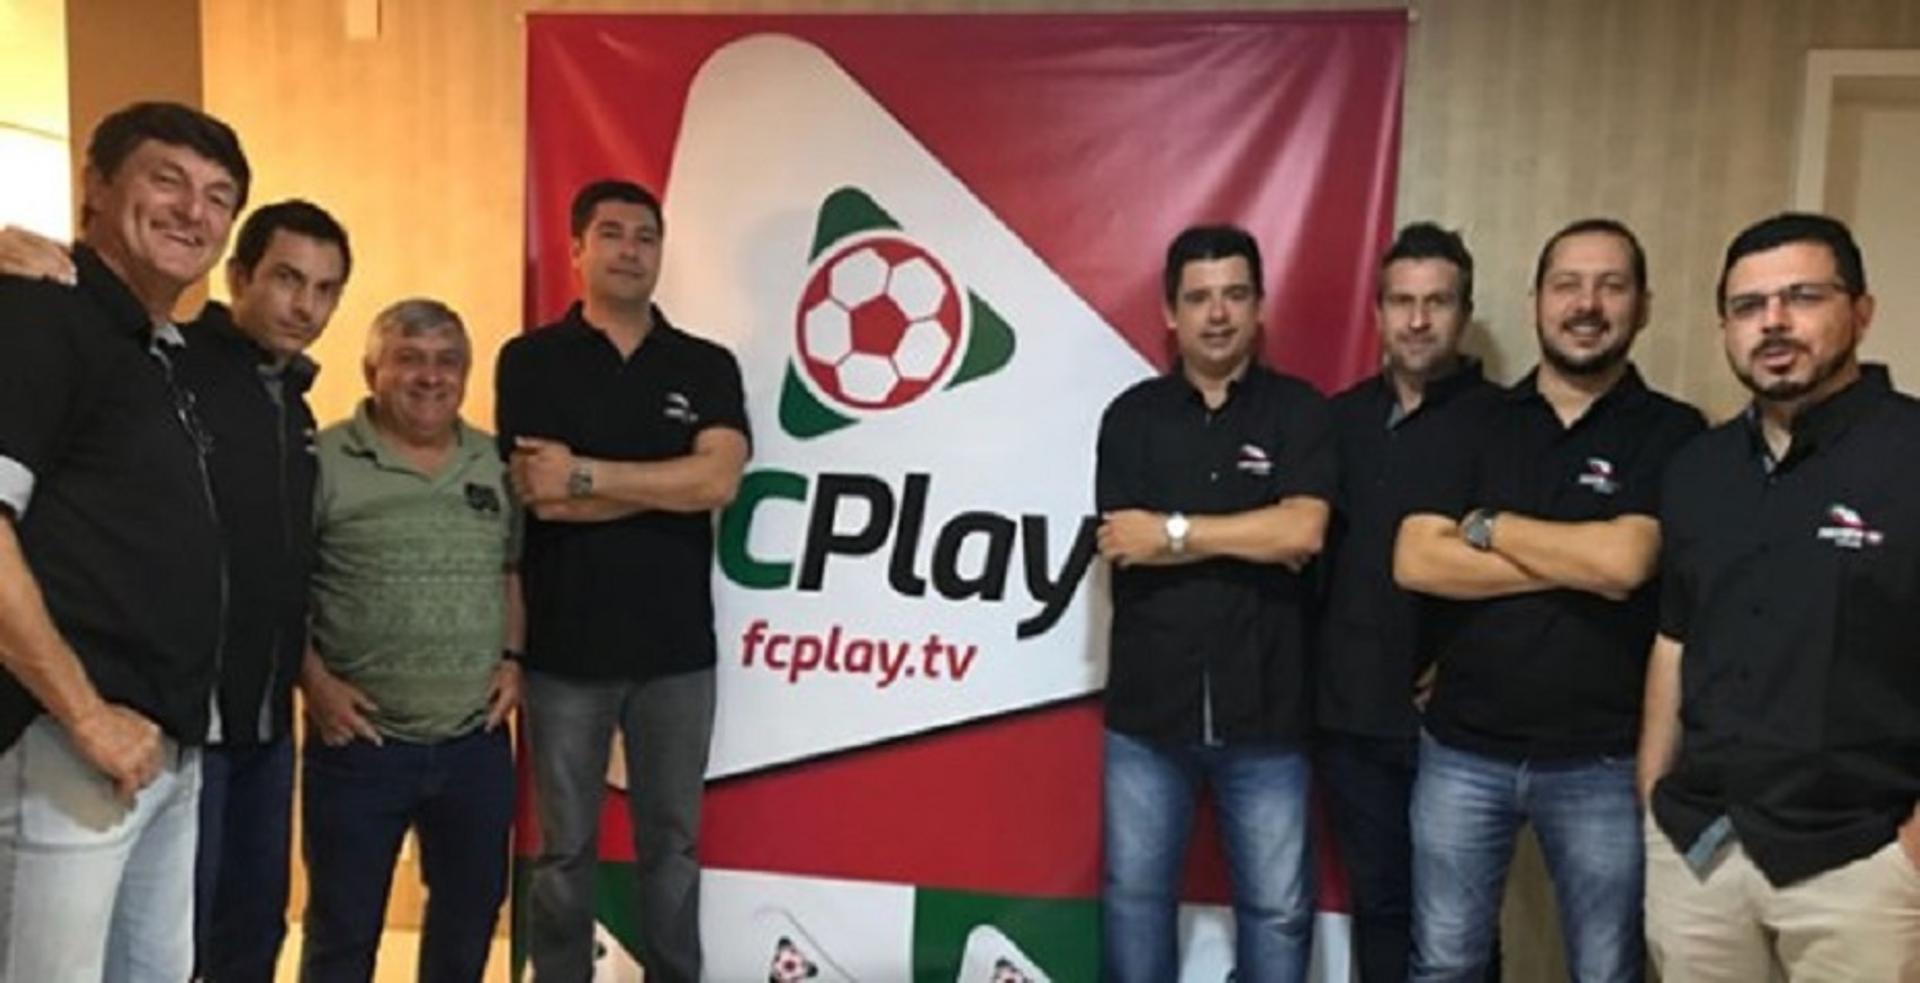 FCplay.tv